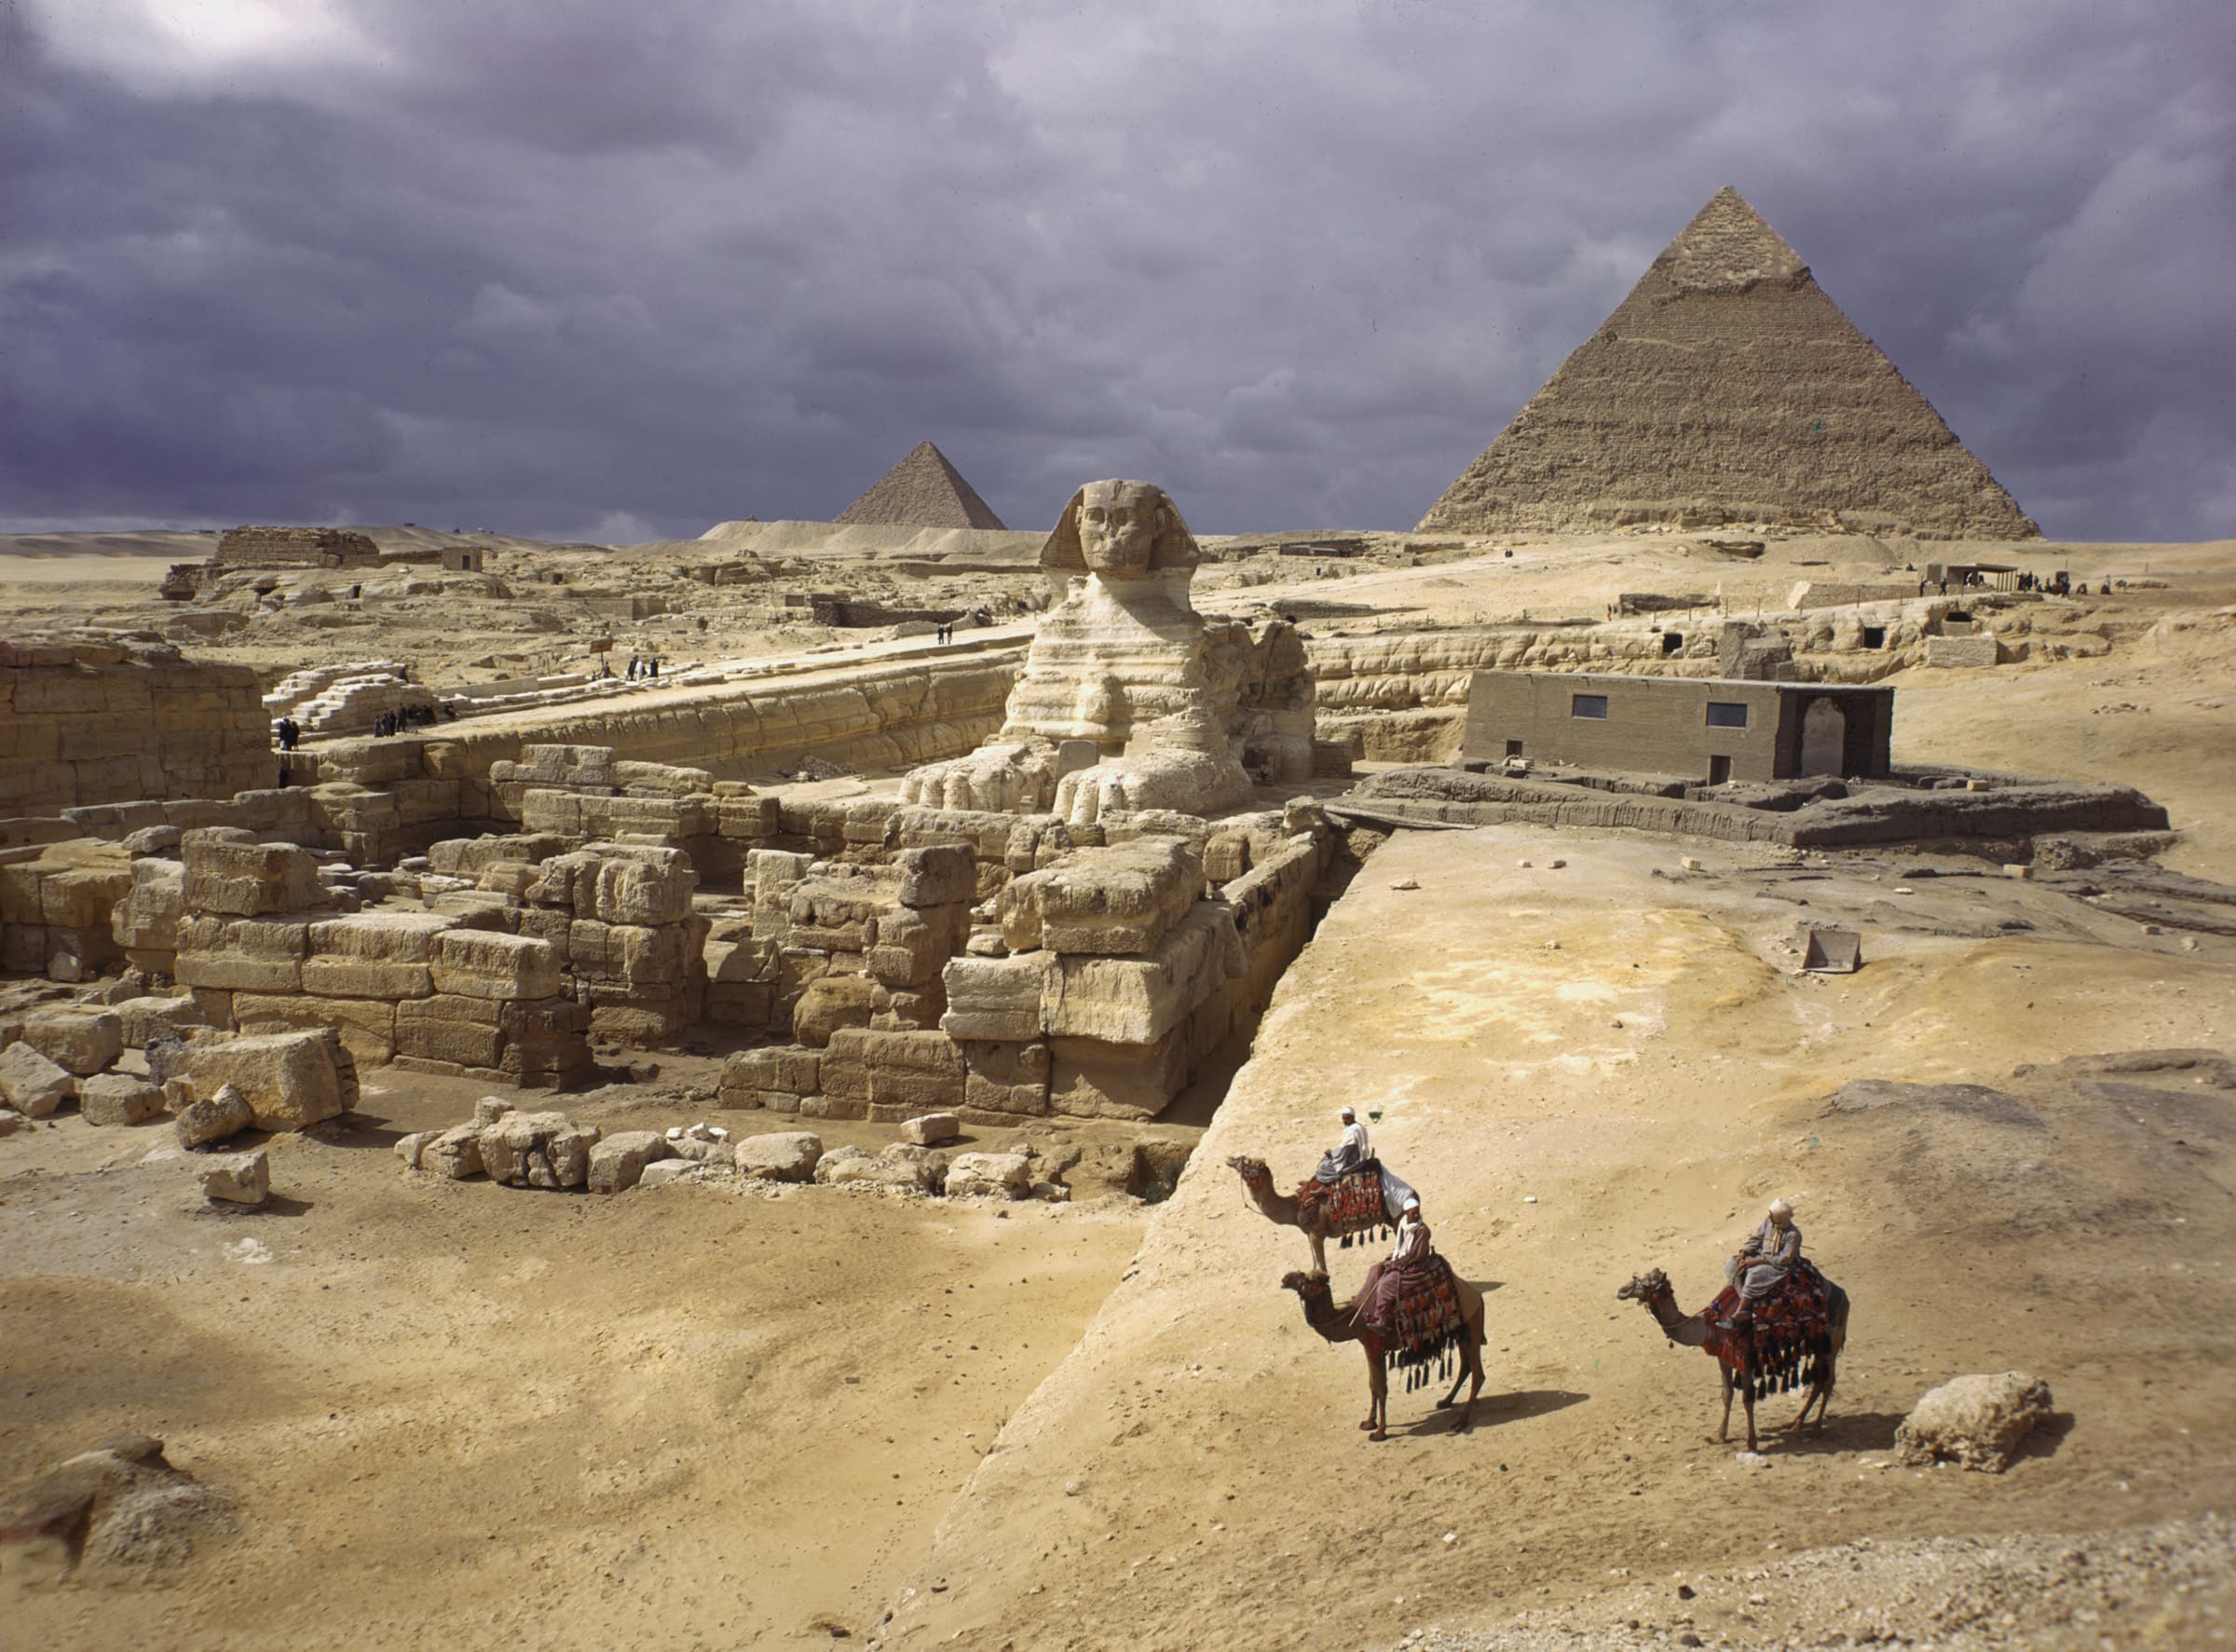 Уничтожение объектов Древнего Египта шло планомерно